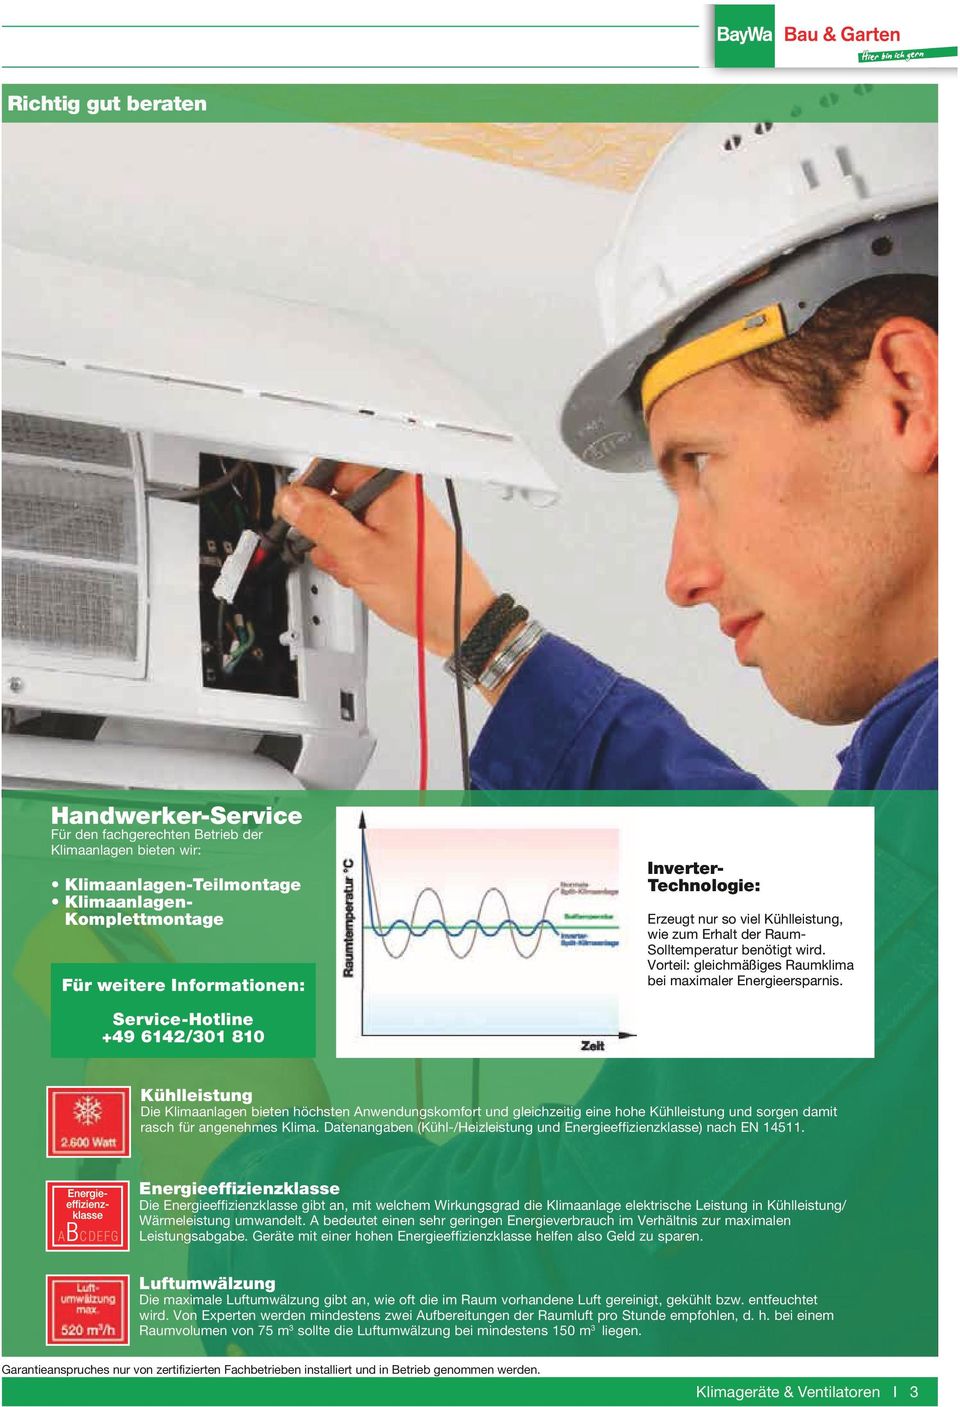 Service-Hotline +49 6142/301 810 Kühlleistung Die Klimaanlagen bieten höchsten n wendungs komfort und gleichzeitig eine hohe Kühlleistung und sorgen damit rasch für angenehmes Klima.